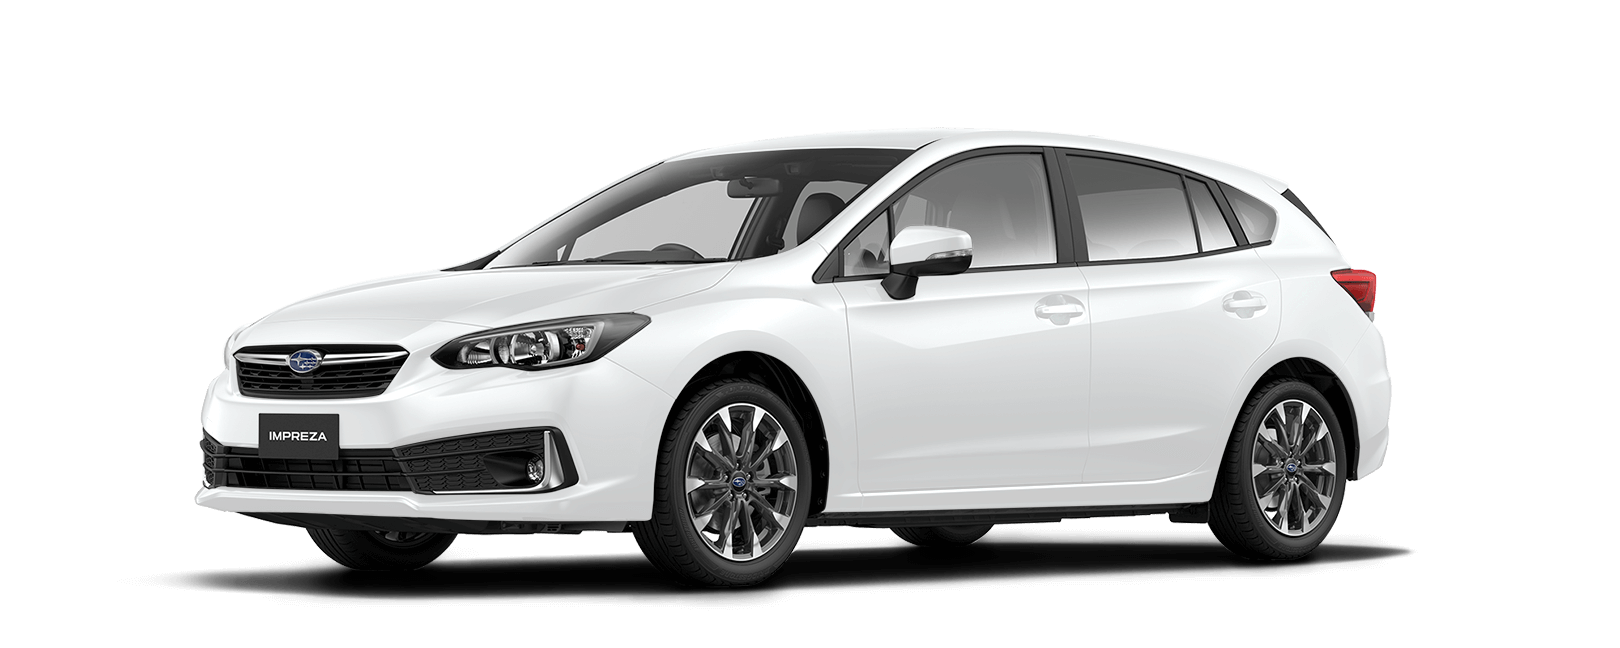 Subaru New Zealand white Impreza car shot